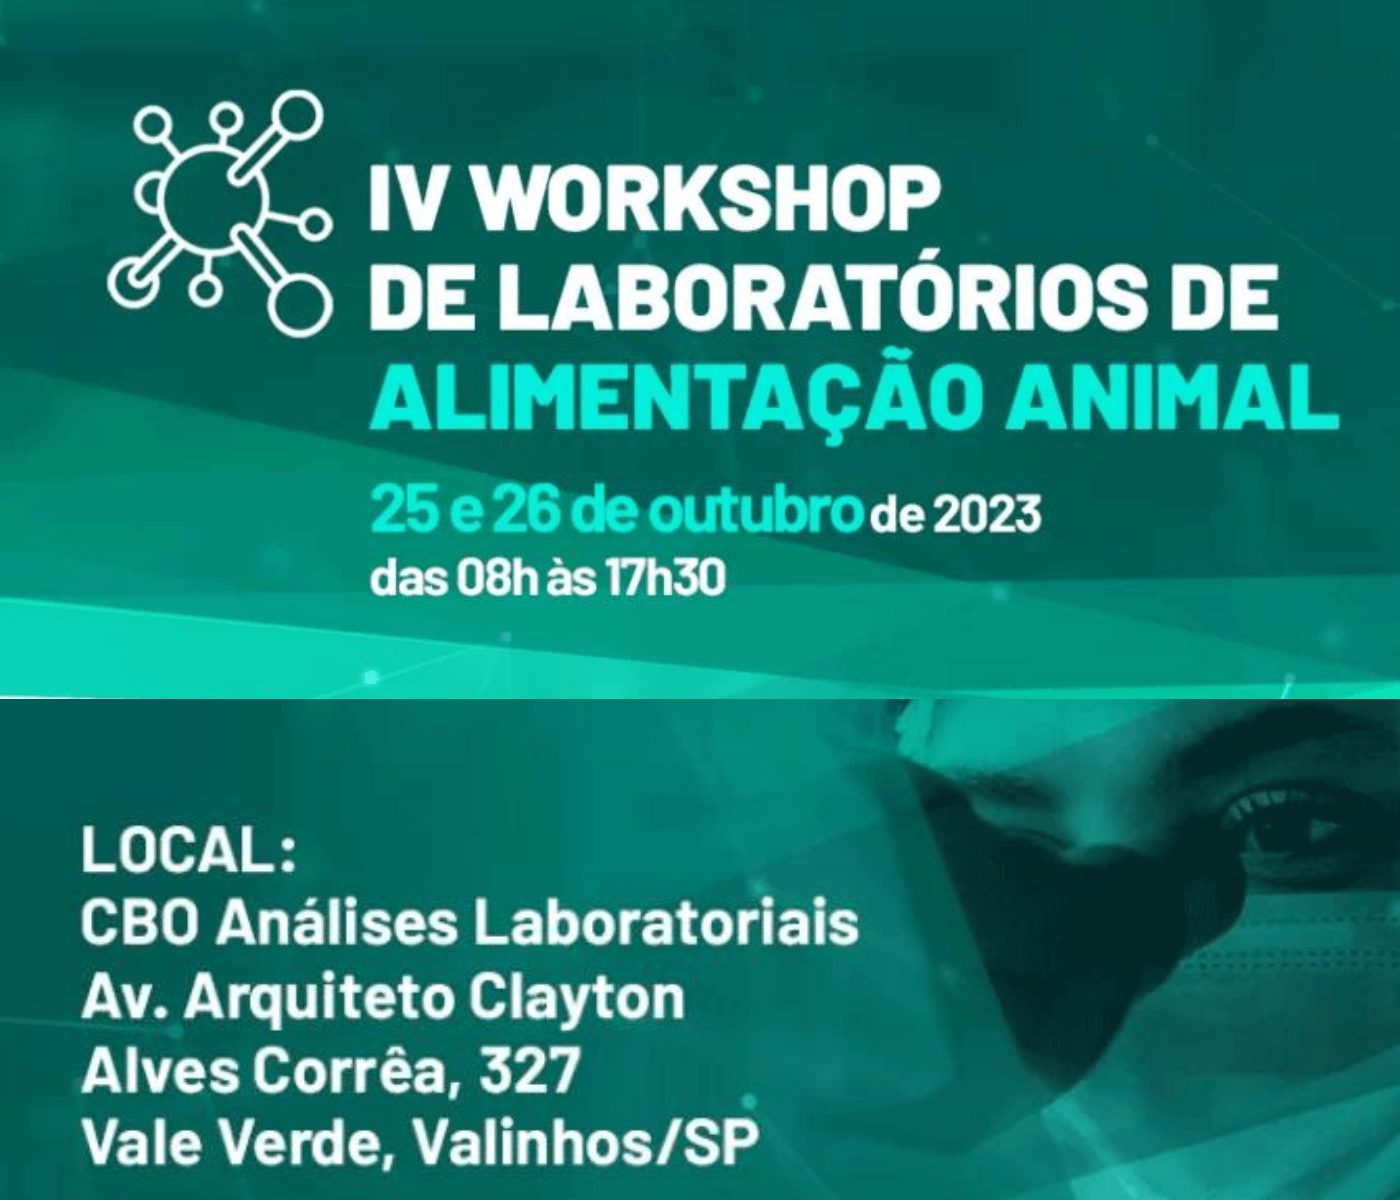 Sindirações promove o IV Workshop de Laboratórios de Alimentação Animal